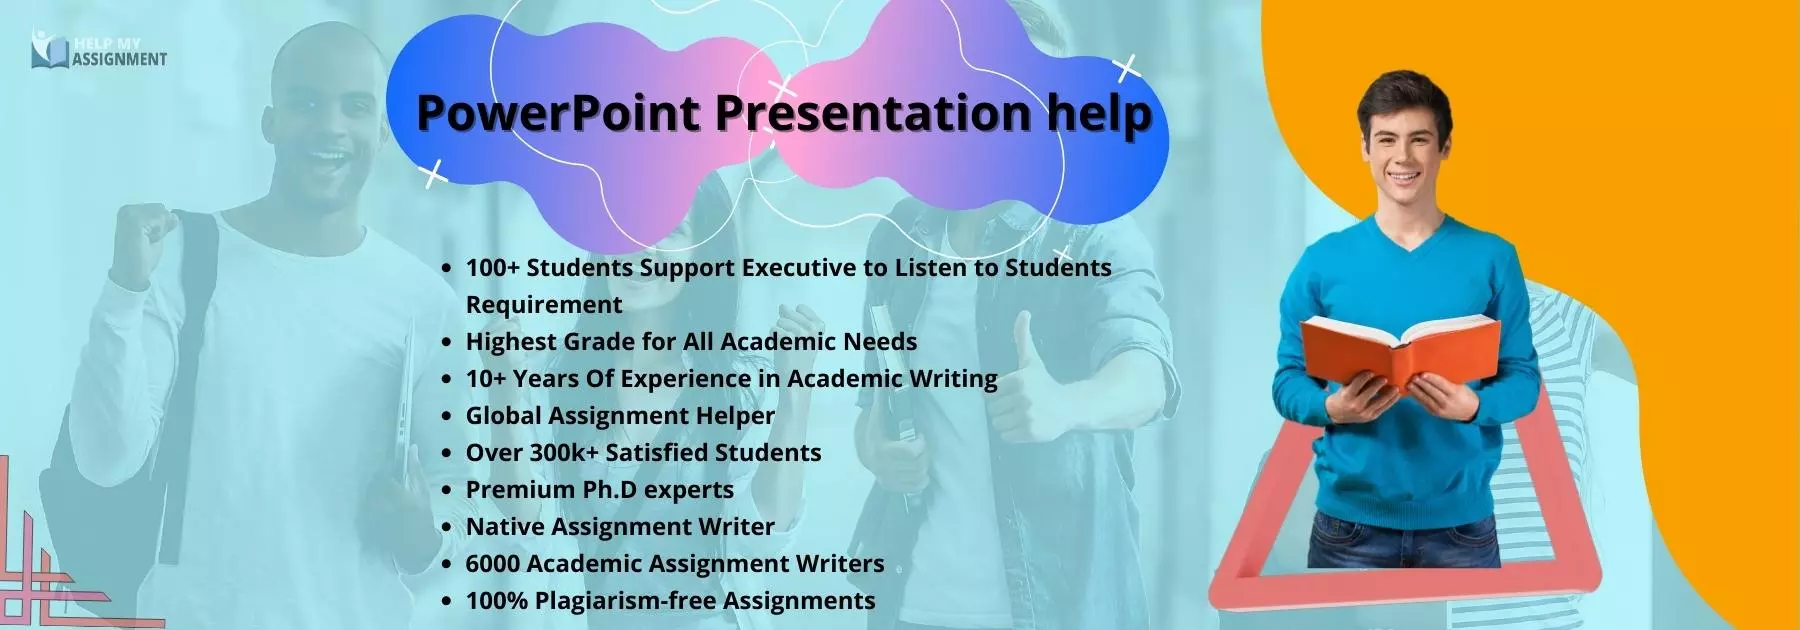 powerpoint presentation help